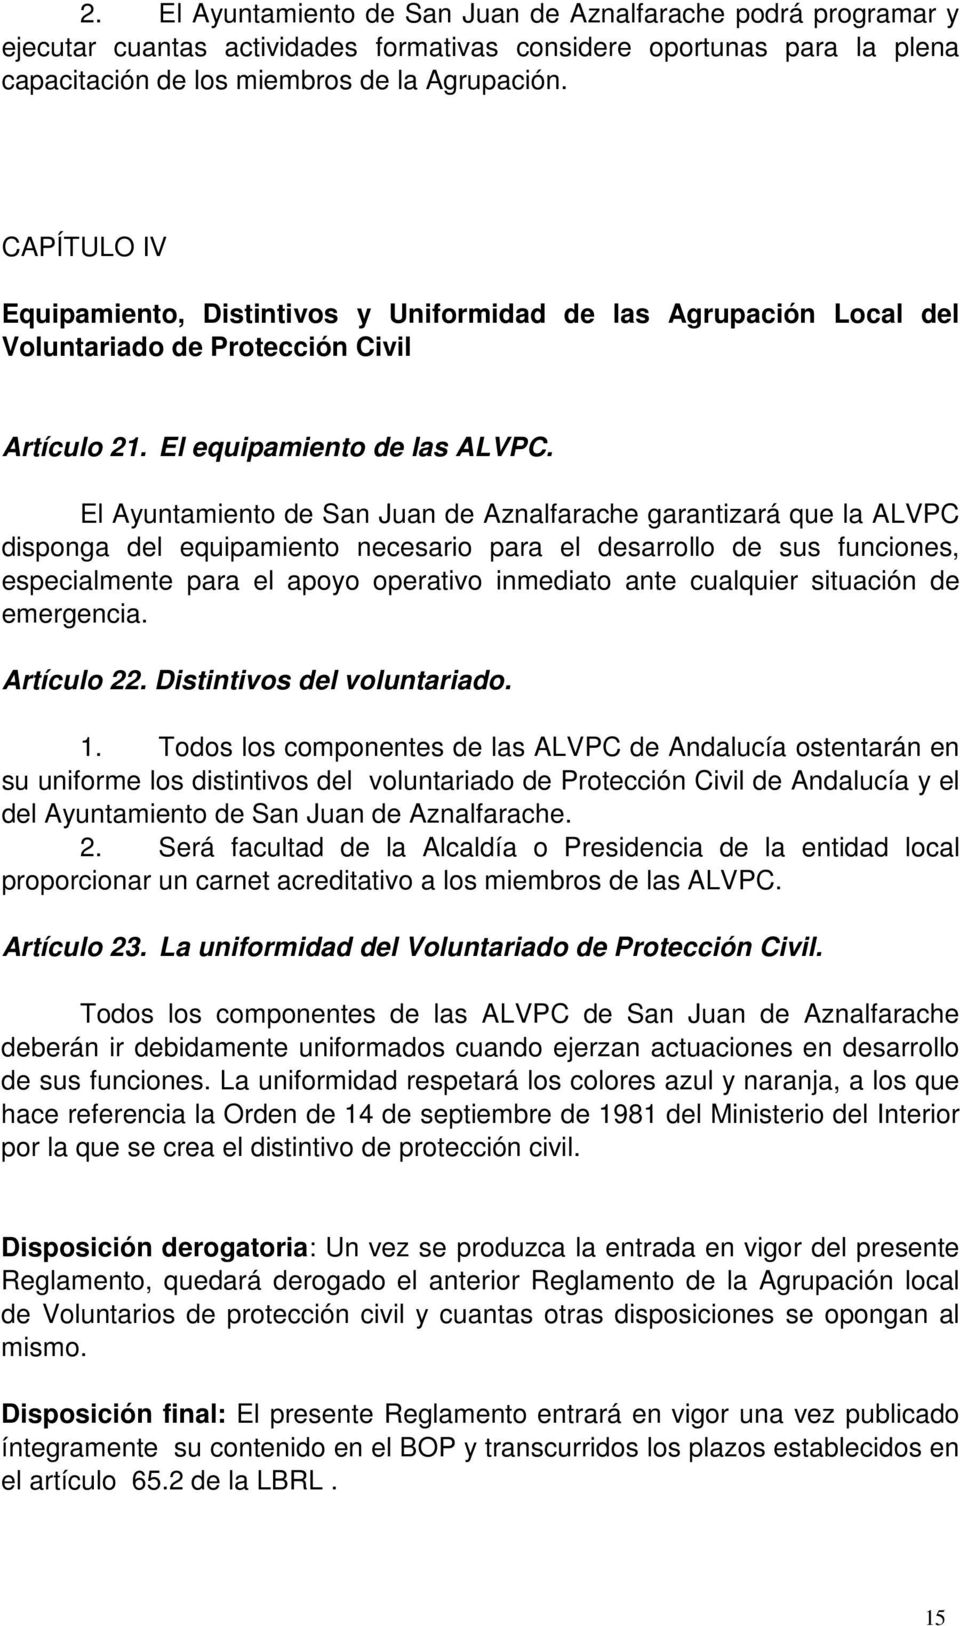 El Ayuntamiento de San Juan de Aznalfarache garantizará que la ALVPC disponga del equipamiento necesario para el desarrollo de sus funciones, especialmente para el apoyo operativo inmediato ante